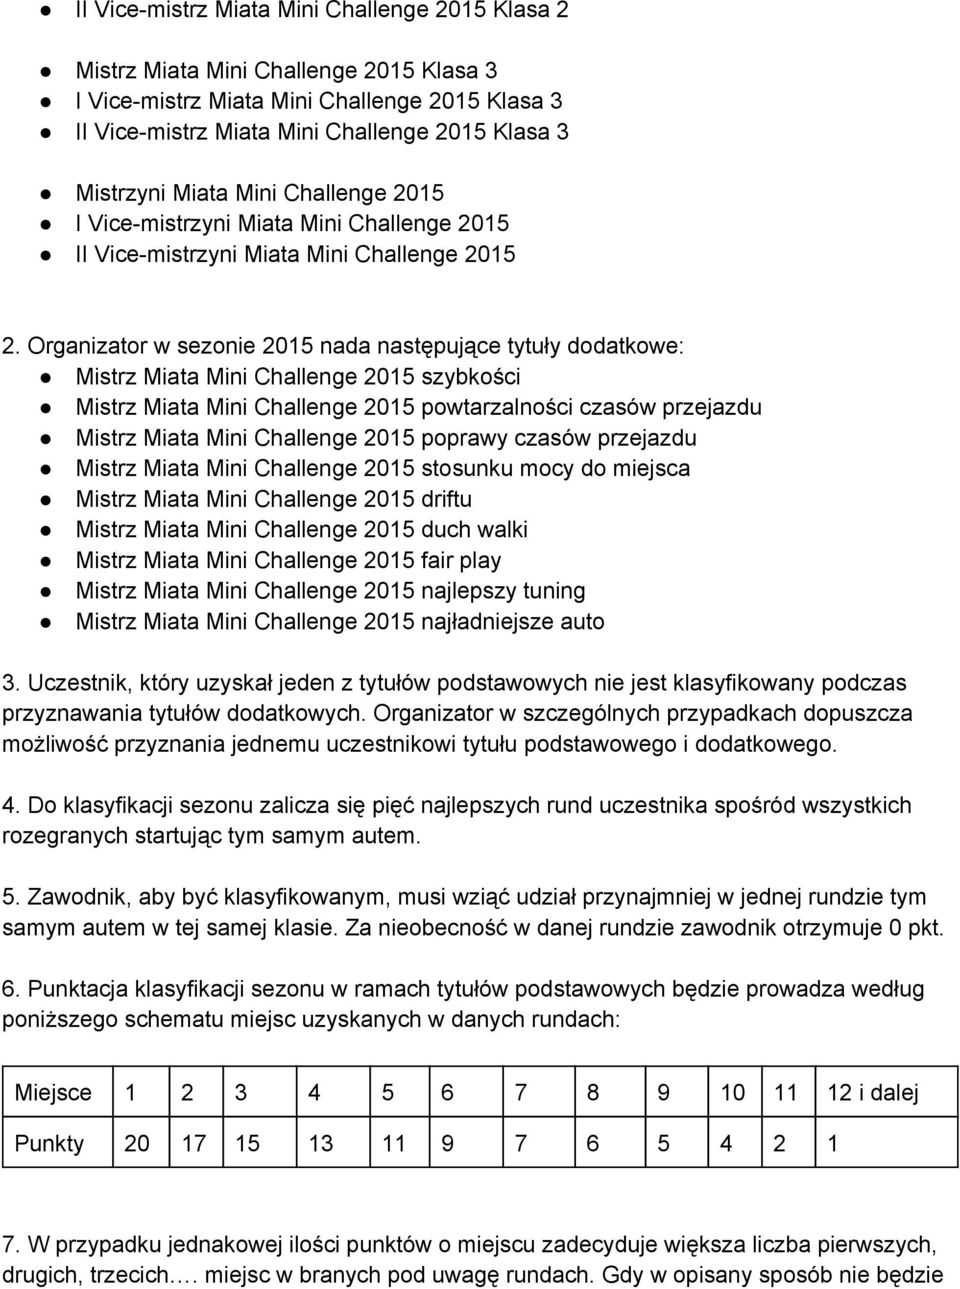 Organizator w sezonie 2015 nada następujące tytuły dodatkowe: Mistrz Miata Mini Challenge 2015 szybkości Mistrz Miata Mini Challenge 2015 powtarzalności czasów przejazdu Mistrz Miata Mini Challenge